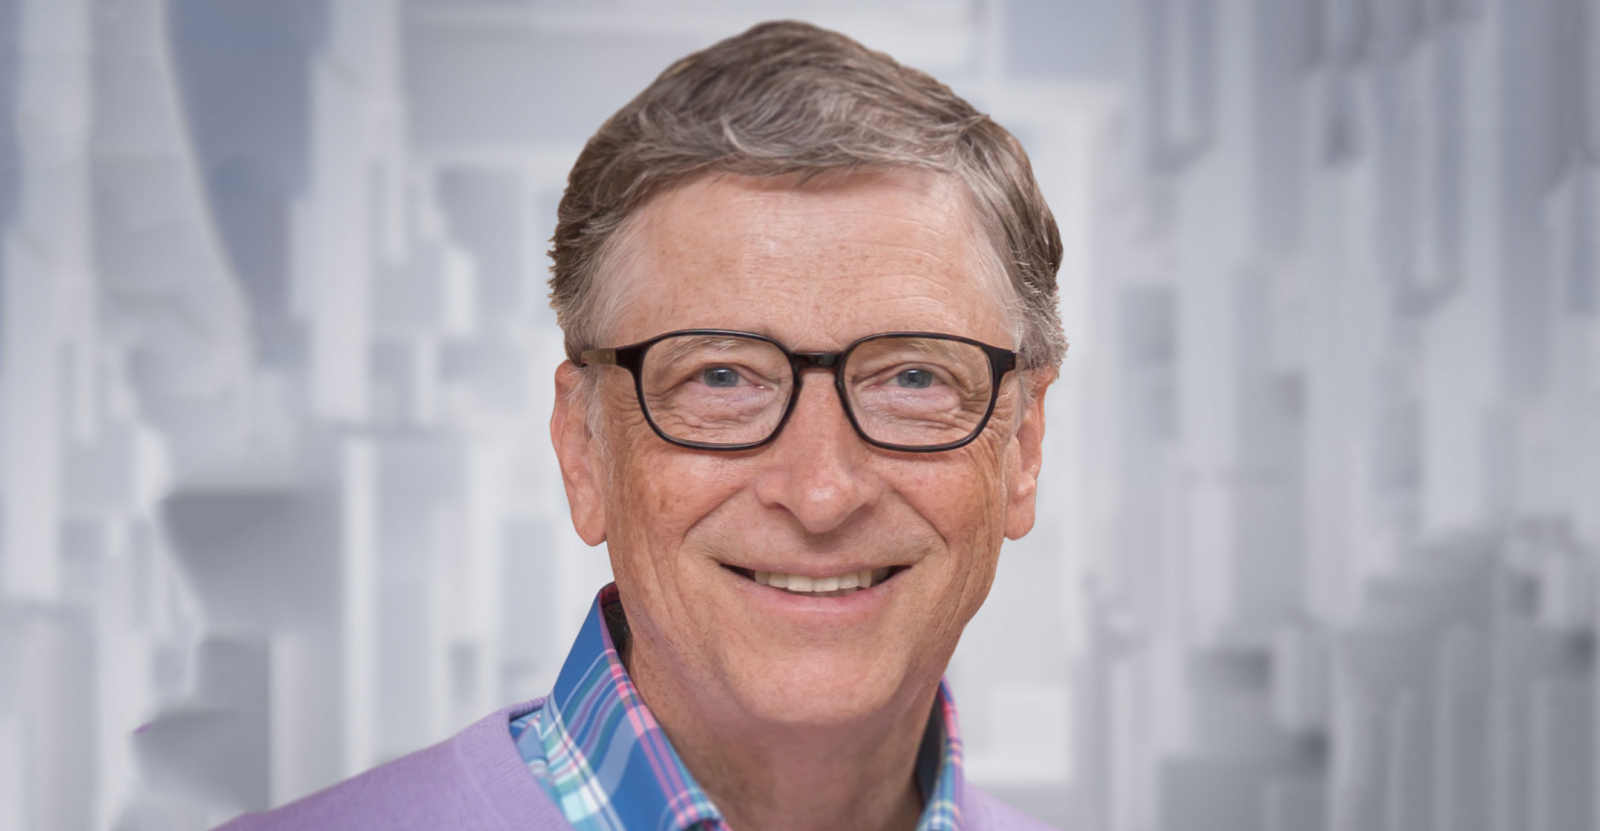 8 “nguyên tắc vàng” khiến Bill Gates trở thành một trong các tỷ phú giàu  nhất thế giới